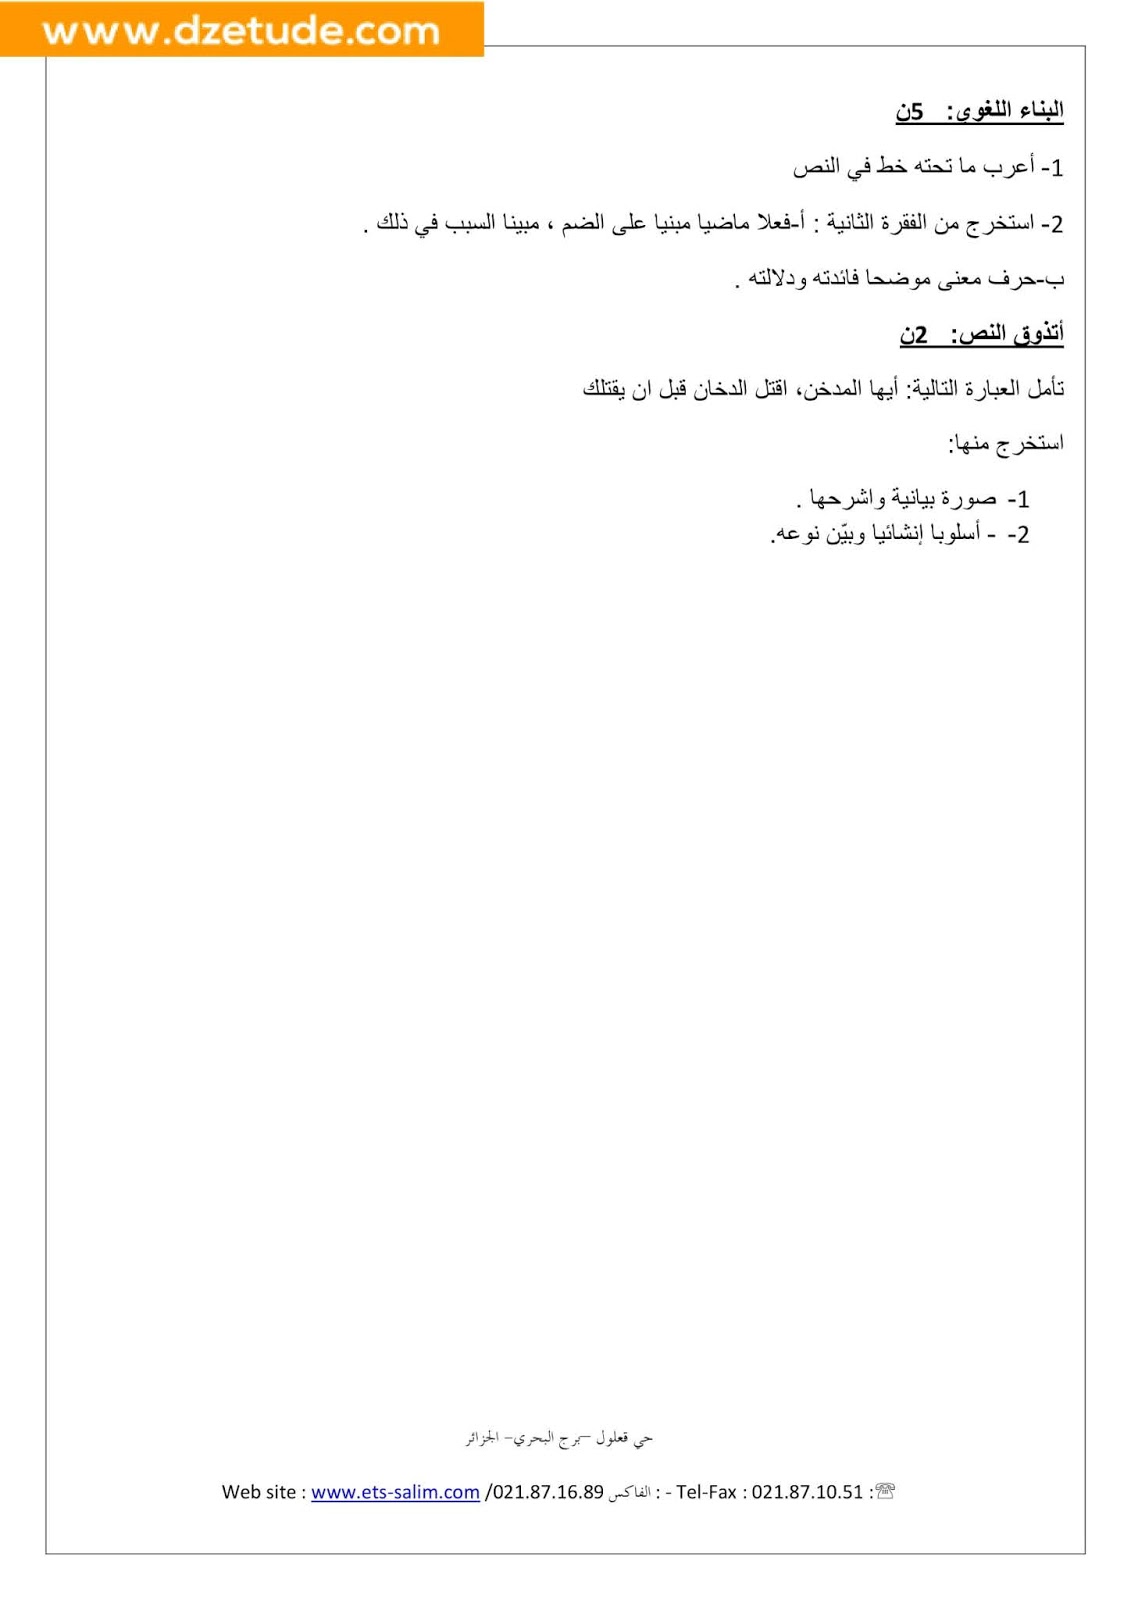 فرض اللغة العربية الفصل الأول للسنة الثالثة متوسط - الجيل الثاني نموذج 1